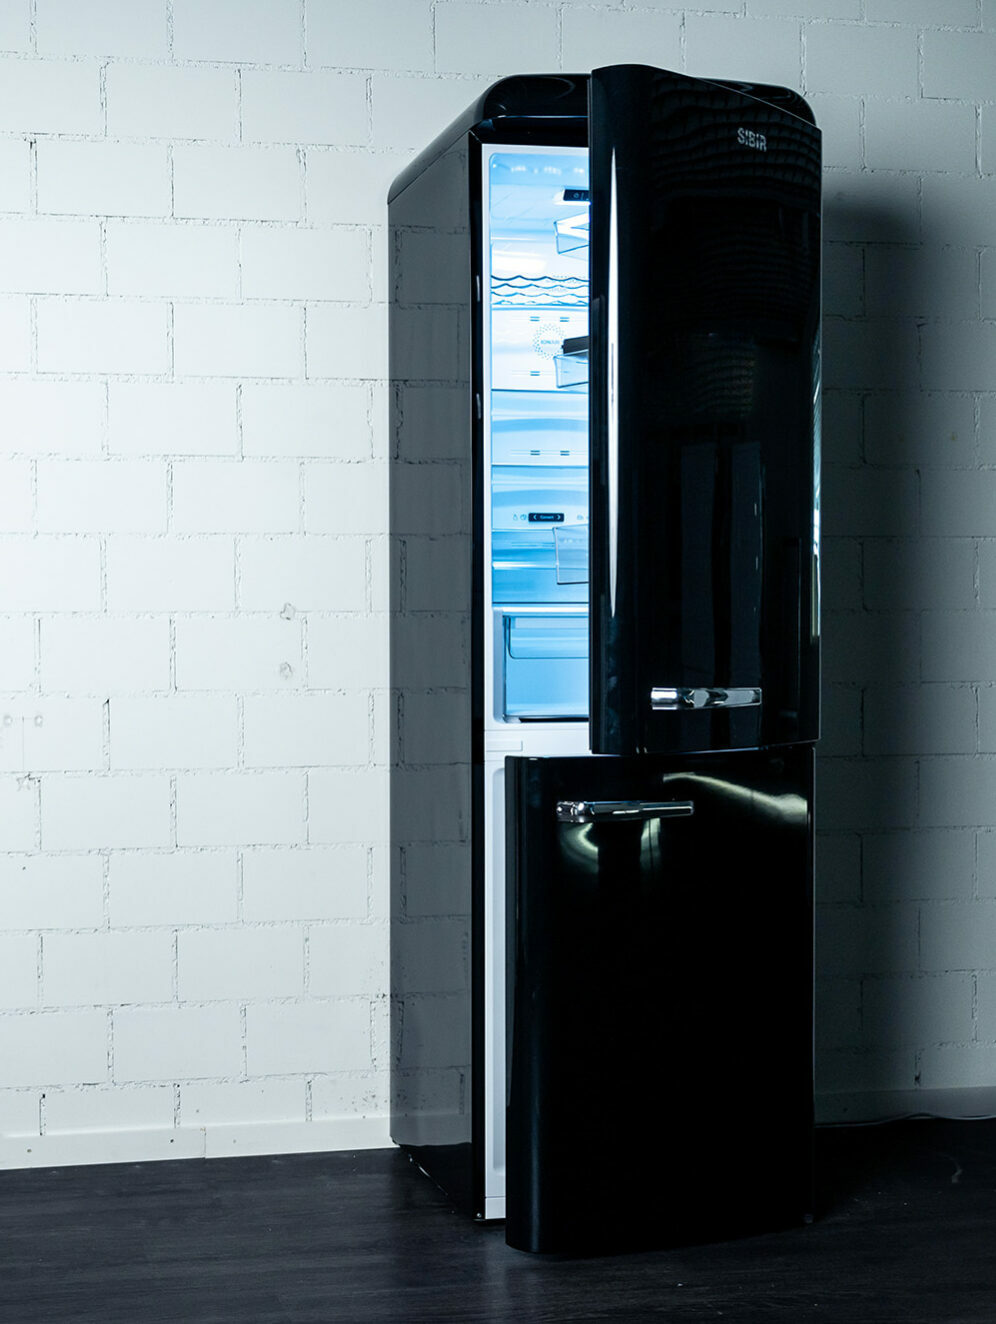 SIBIR Oldtimer fridge in black